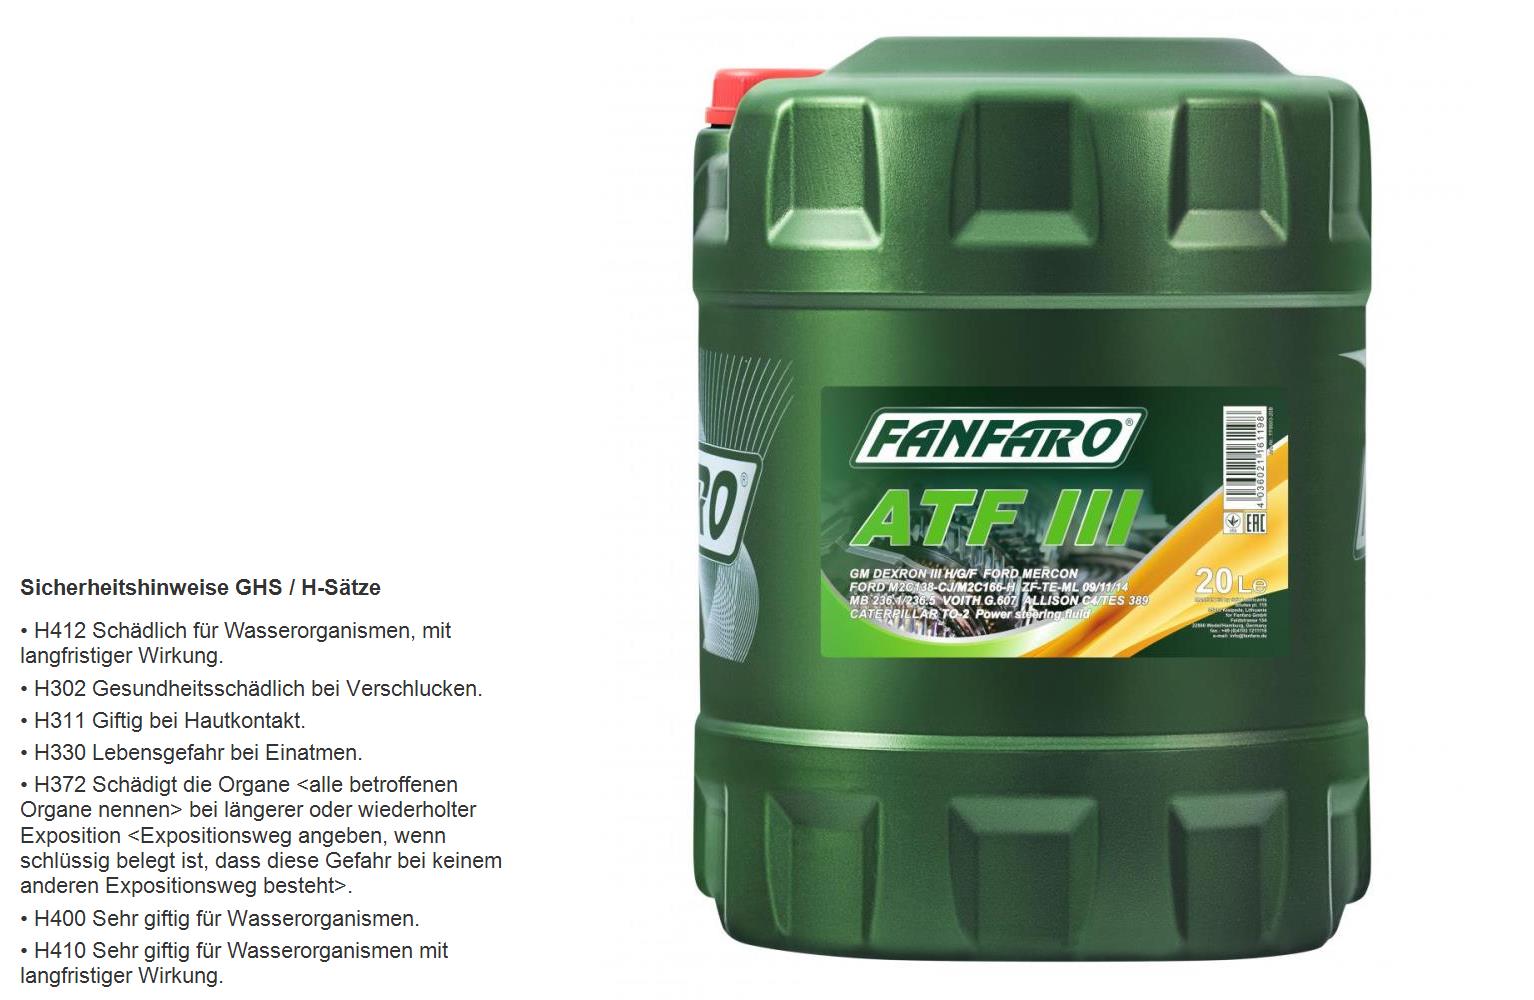 20 Liter FANFARO Automatikgetriebeöl ATF III Gear Oil Öl